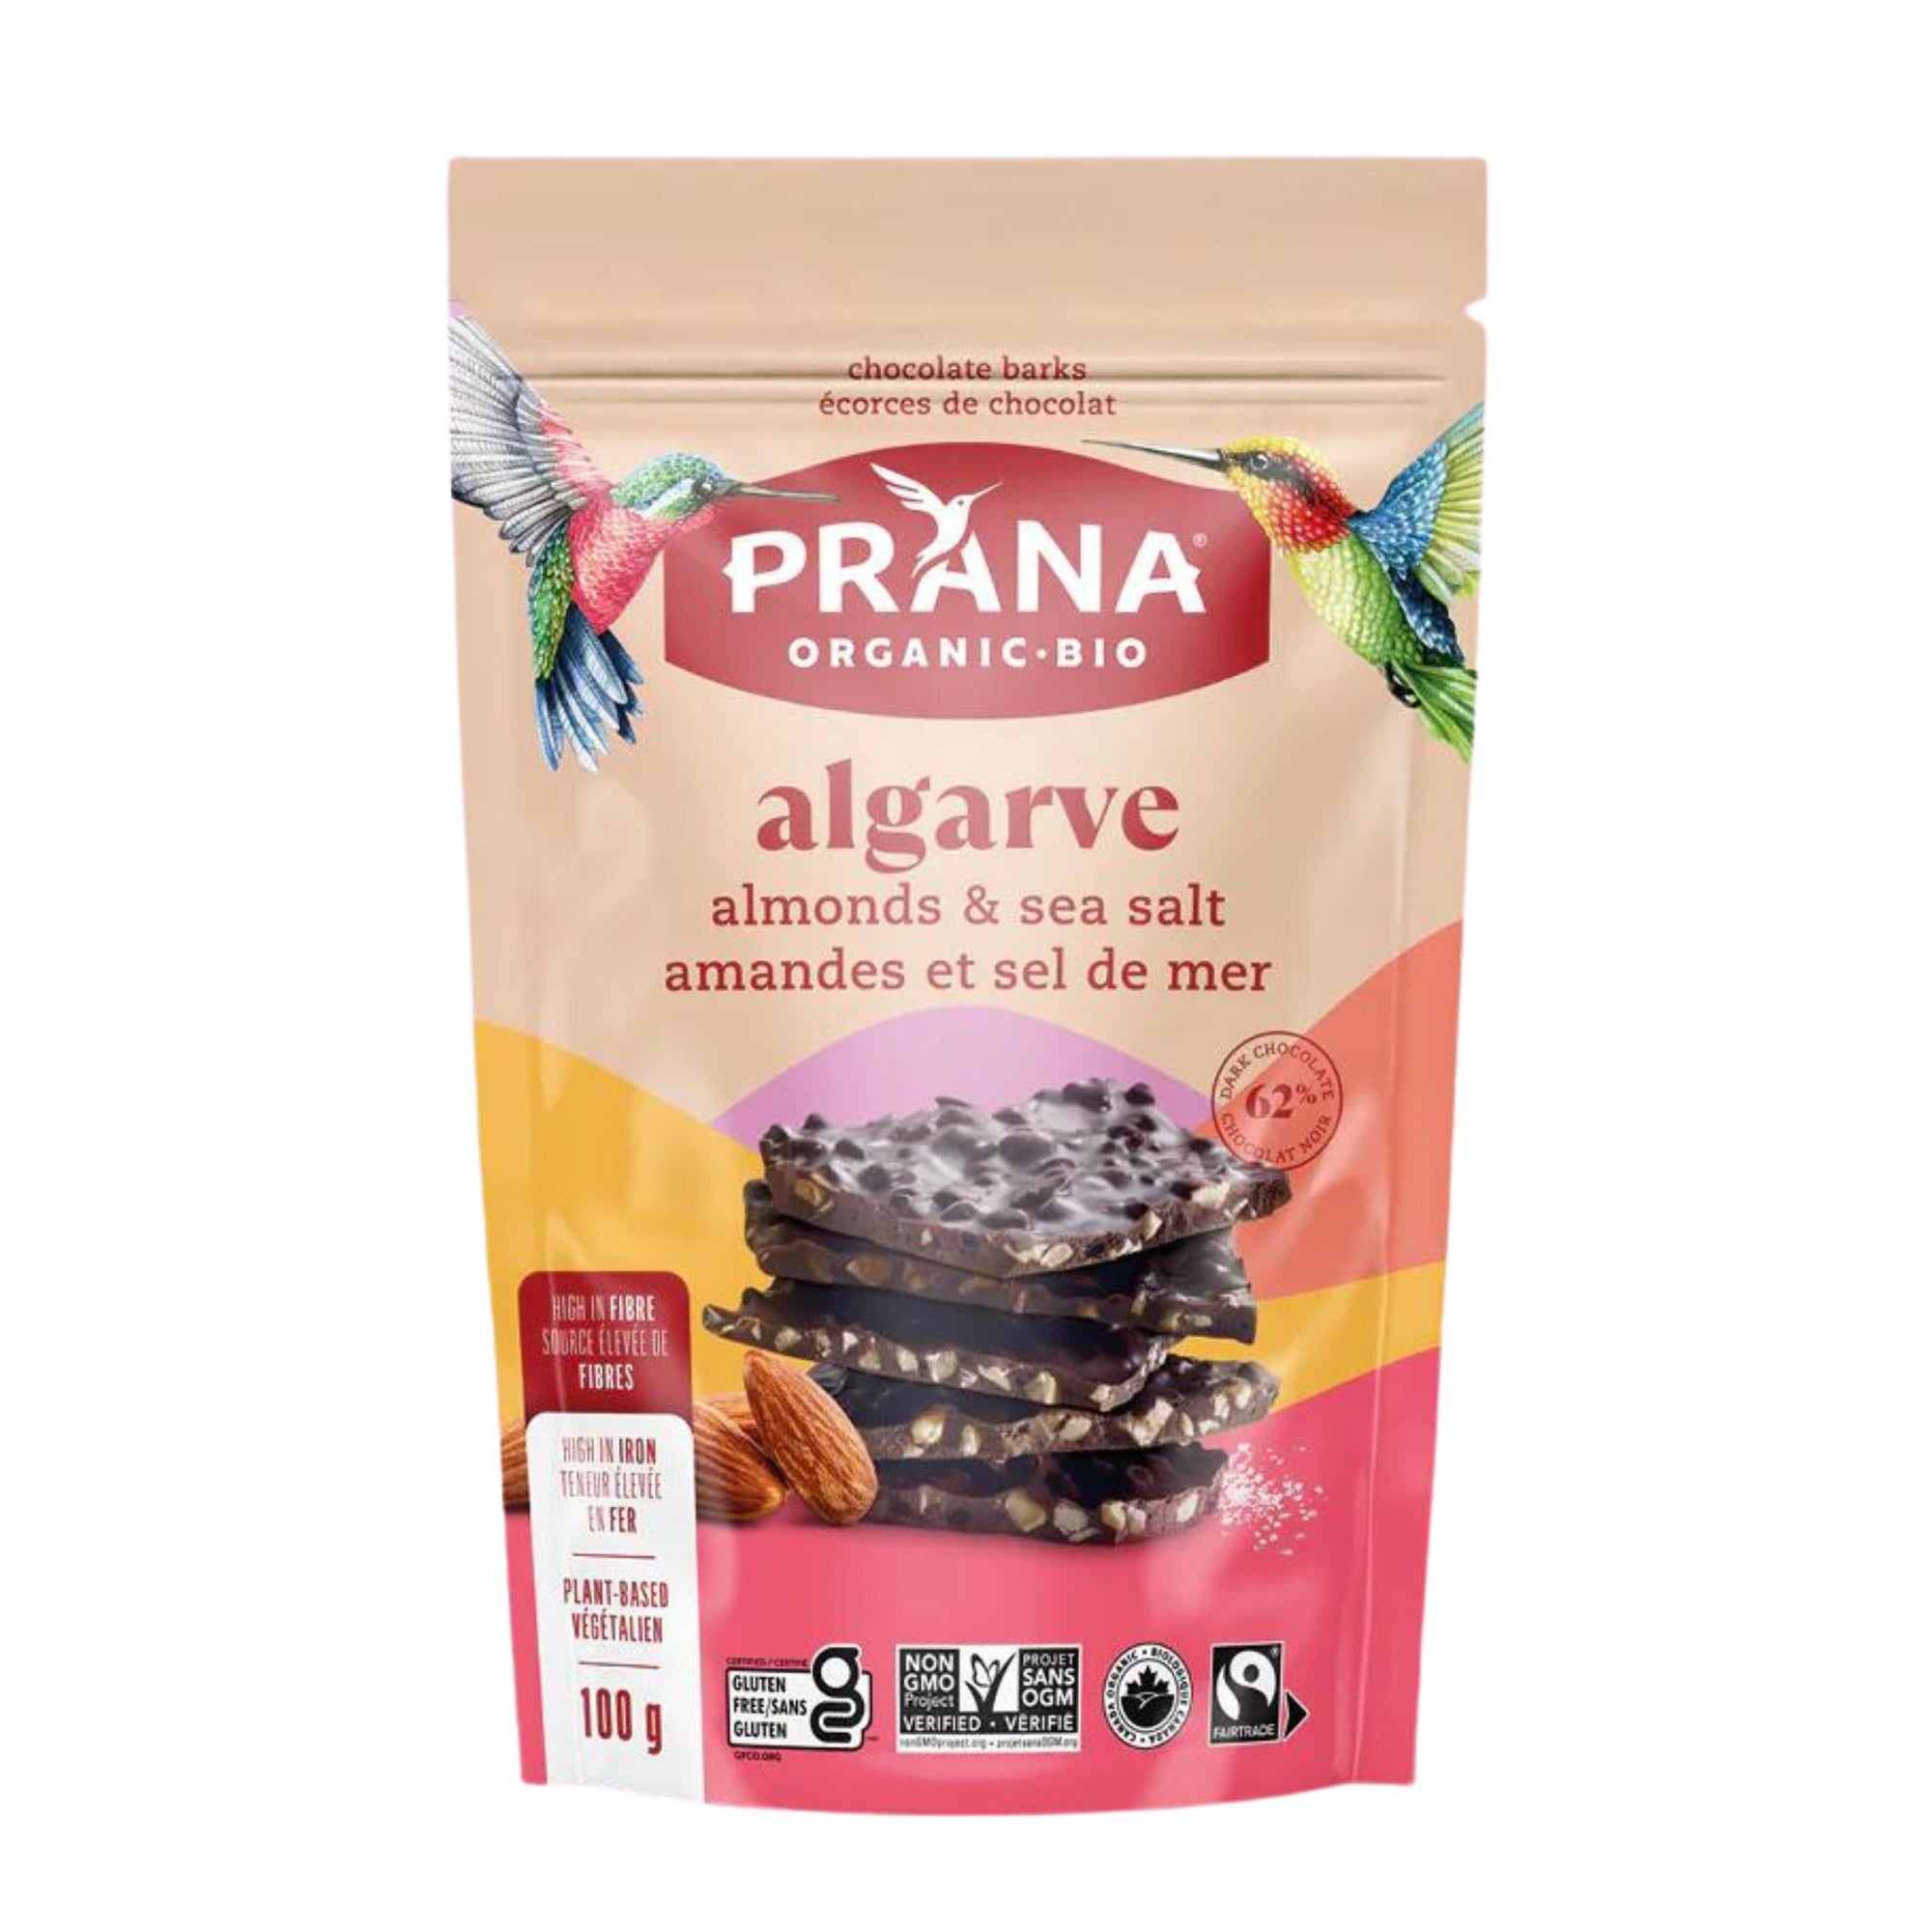 Prana Algarve Chocolate Bark with Almonds & Sea Salt 100g